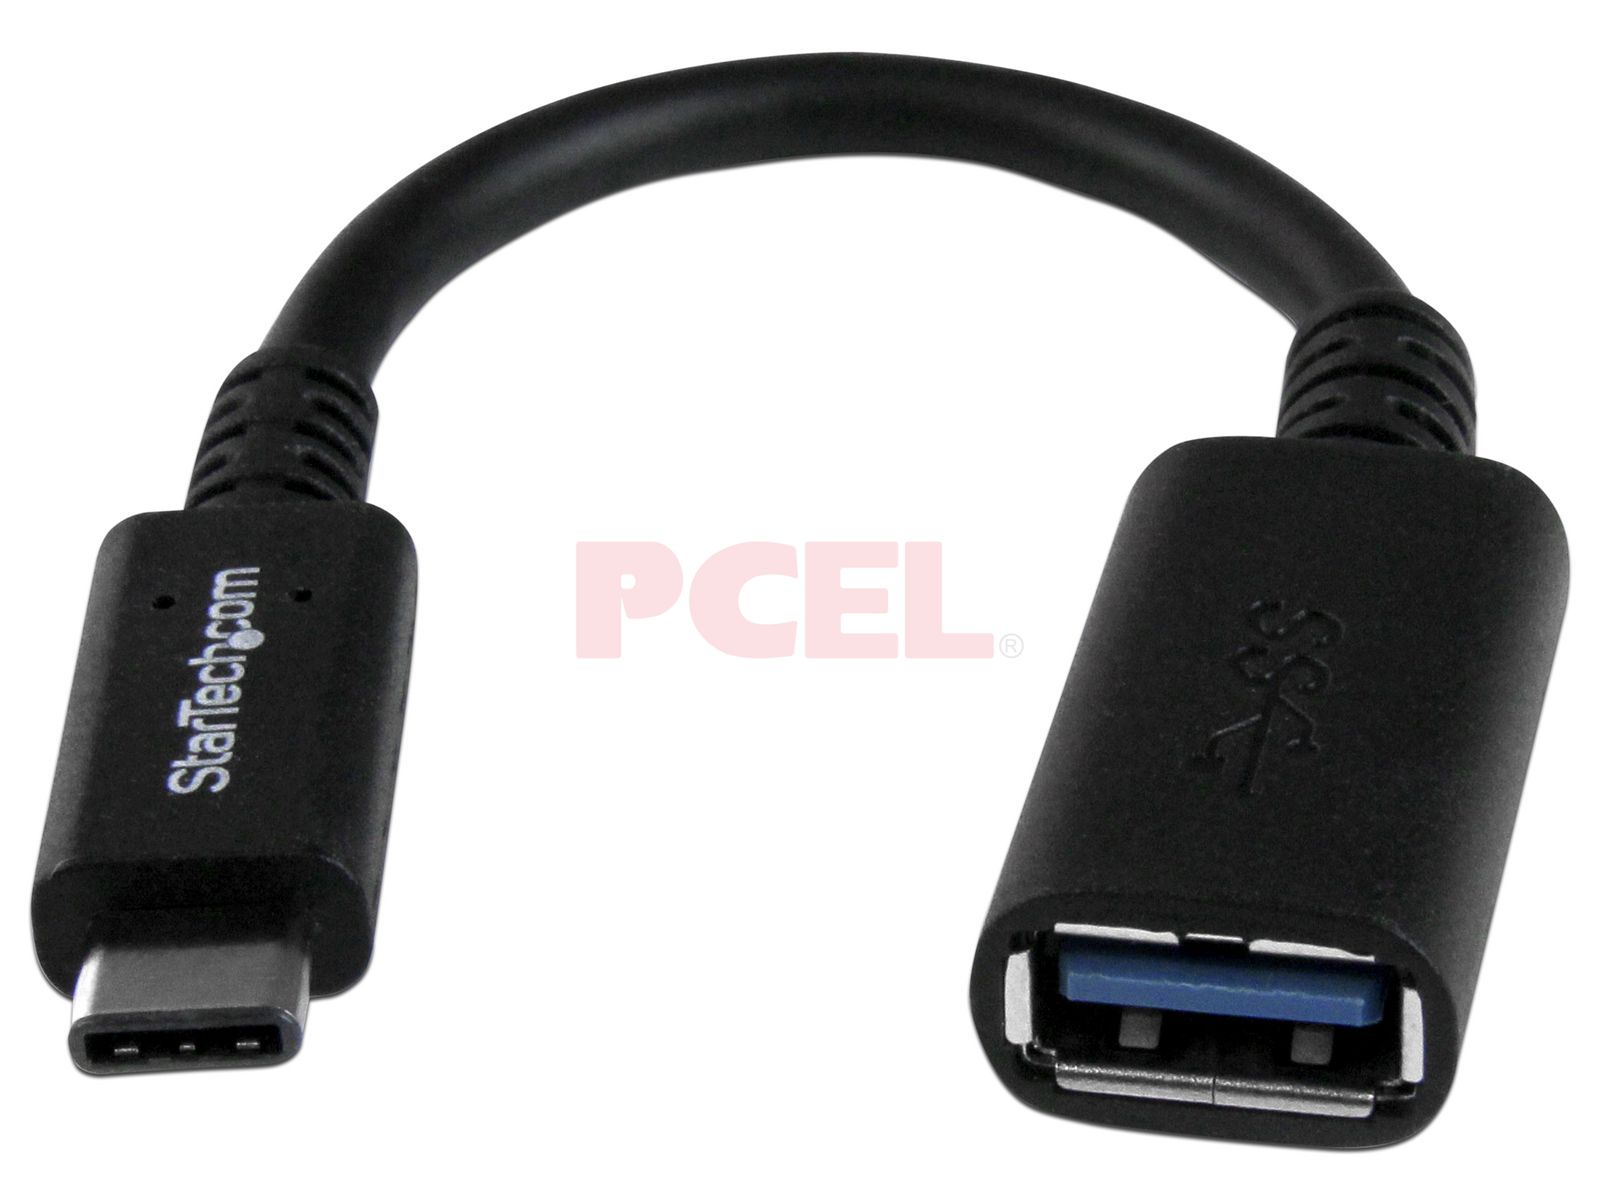 CableCreation Adaptador USB-C a USB 3.0 hembra, 0.5 pies (Gen1) USB3.1 Tipo  C a adaptador tipo A cable OTG, cable adaptador USB a USB C compatible con